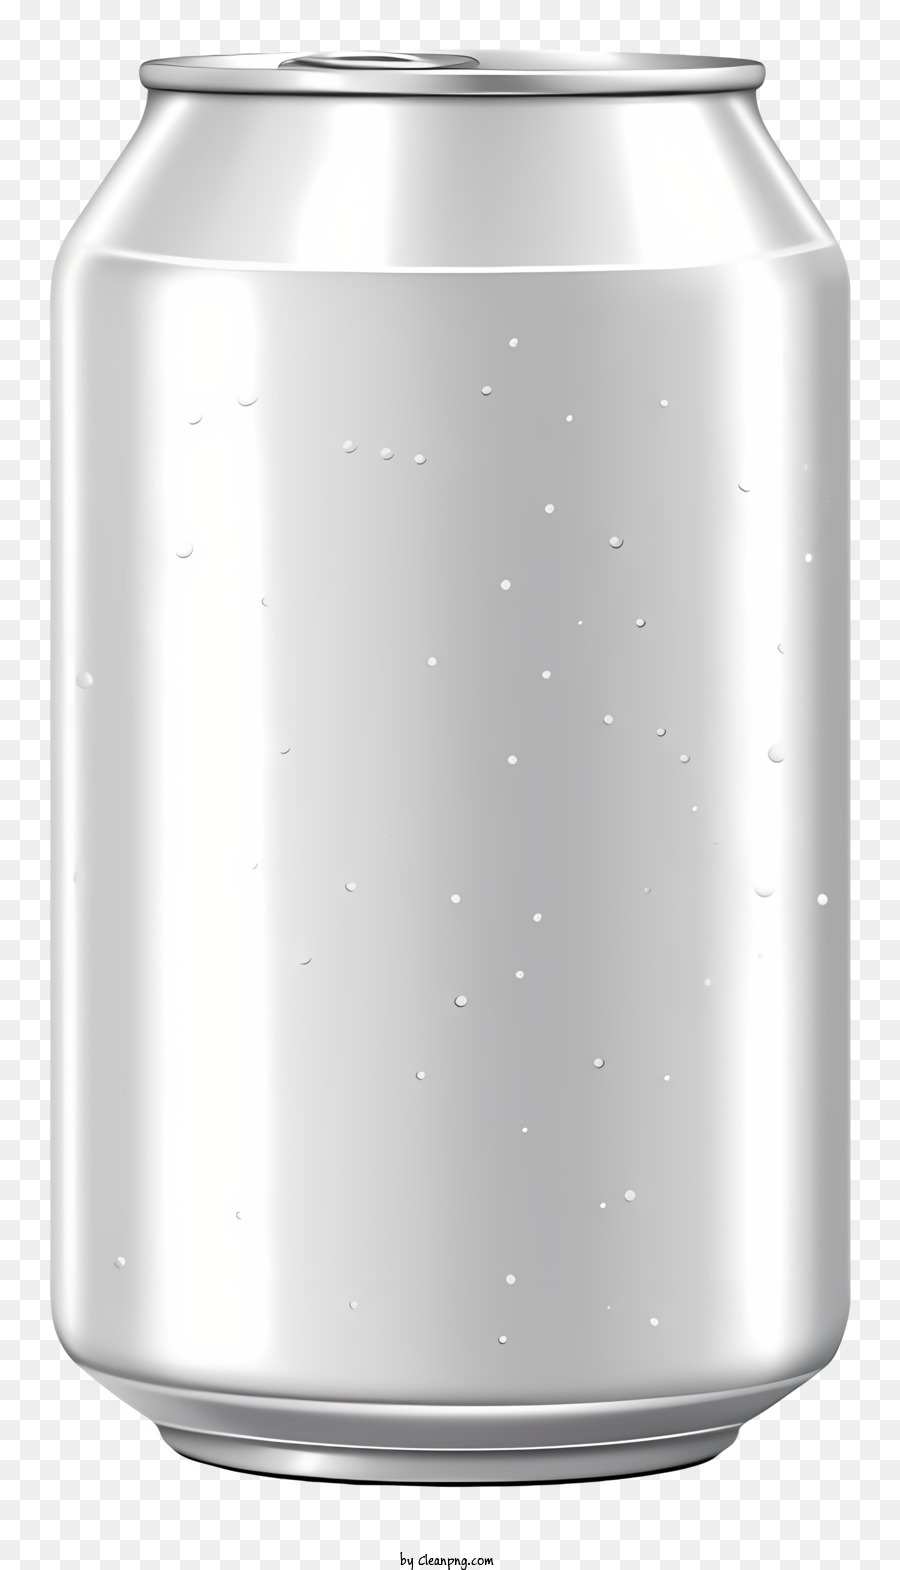 Bia thực tế có thể kim loại có thể màu bạc hình chữ nhật có thể mở - Kim loại bạc có thể với nhãn trắng và văn bản màu xanh